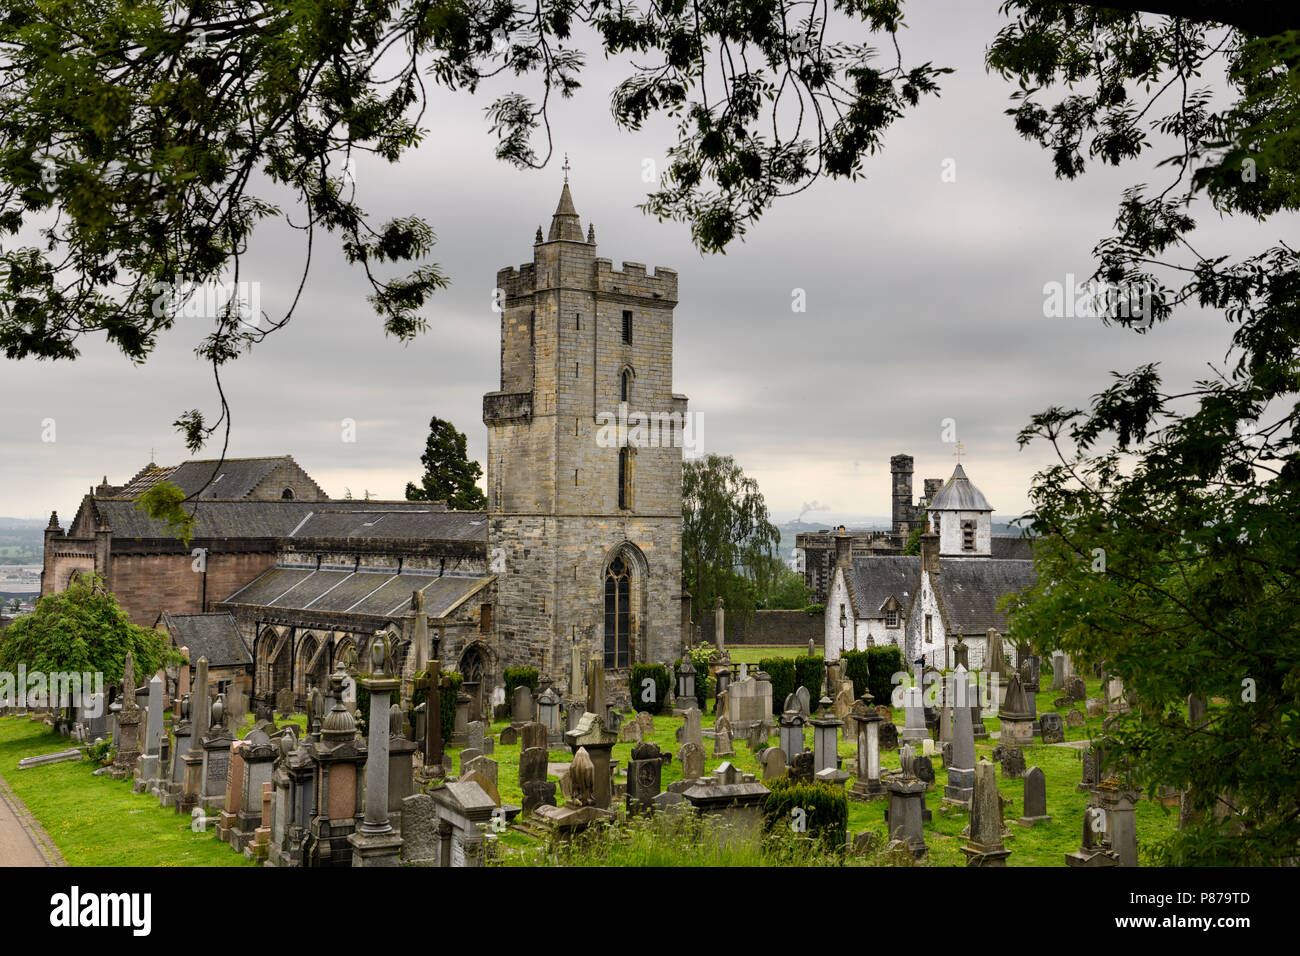 Chiesa di Santo rude con torre campanaria e Royal cimitero con lapidi storico Cowane's Hospital e Town Jail in Stirling Scozia Scotland Regno Unito Foto Stock